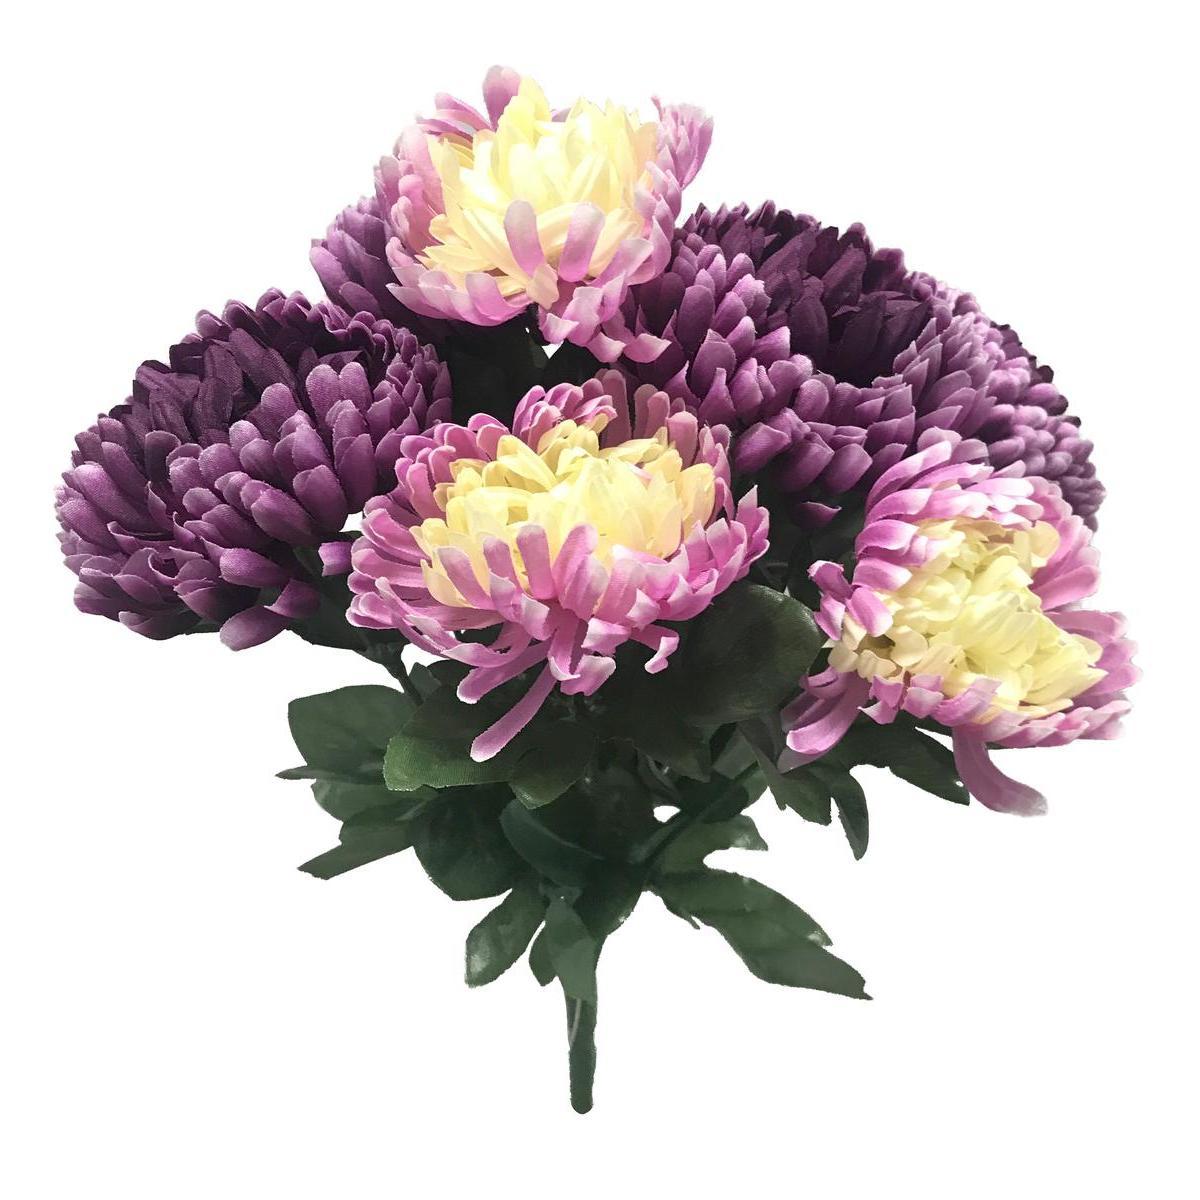 Bouquet de chrysanthèmes - Hauteur 35 cm - 2 modèles